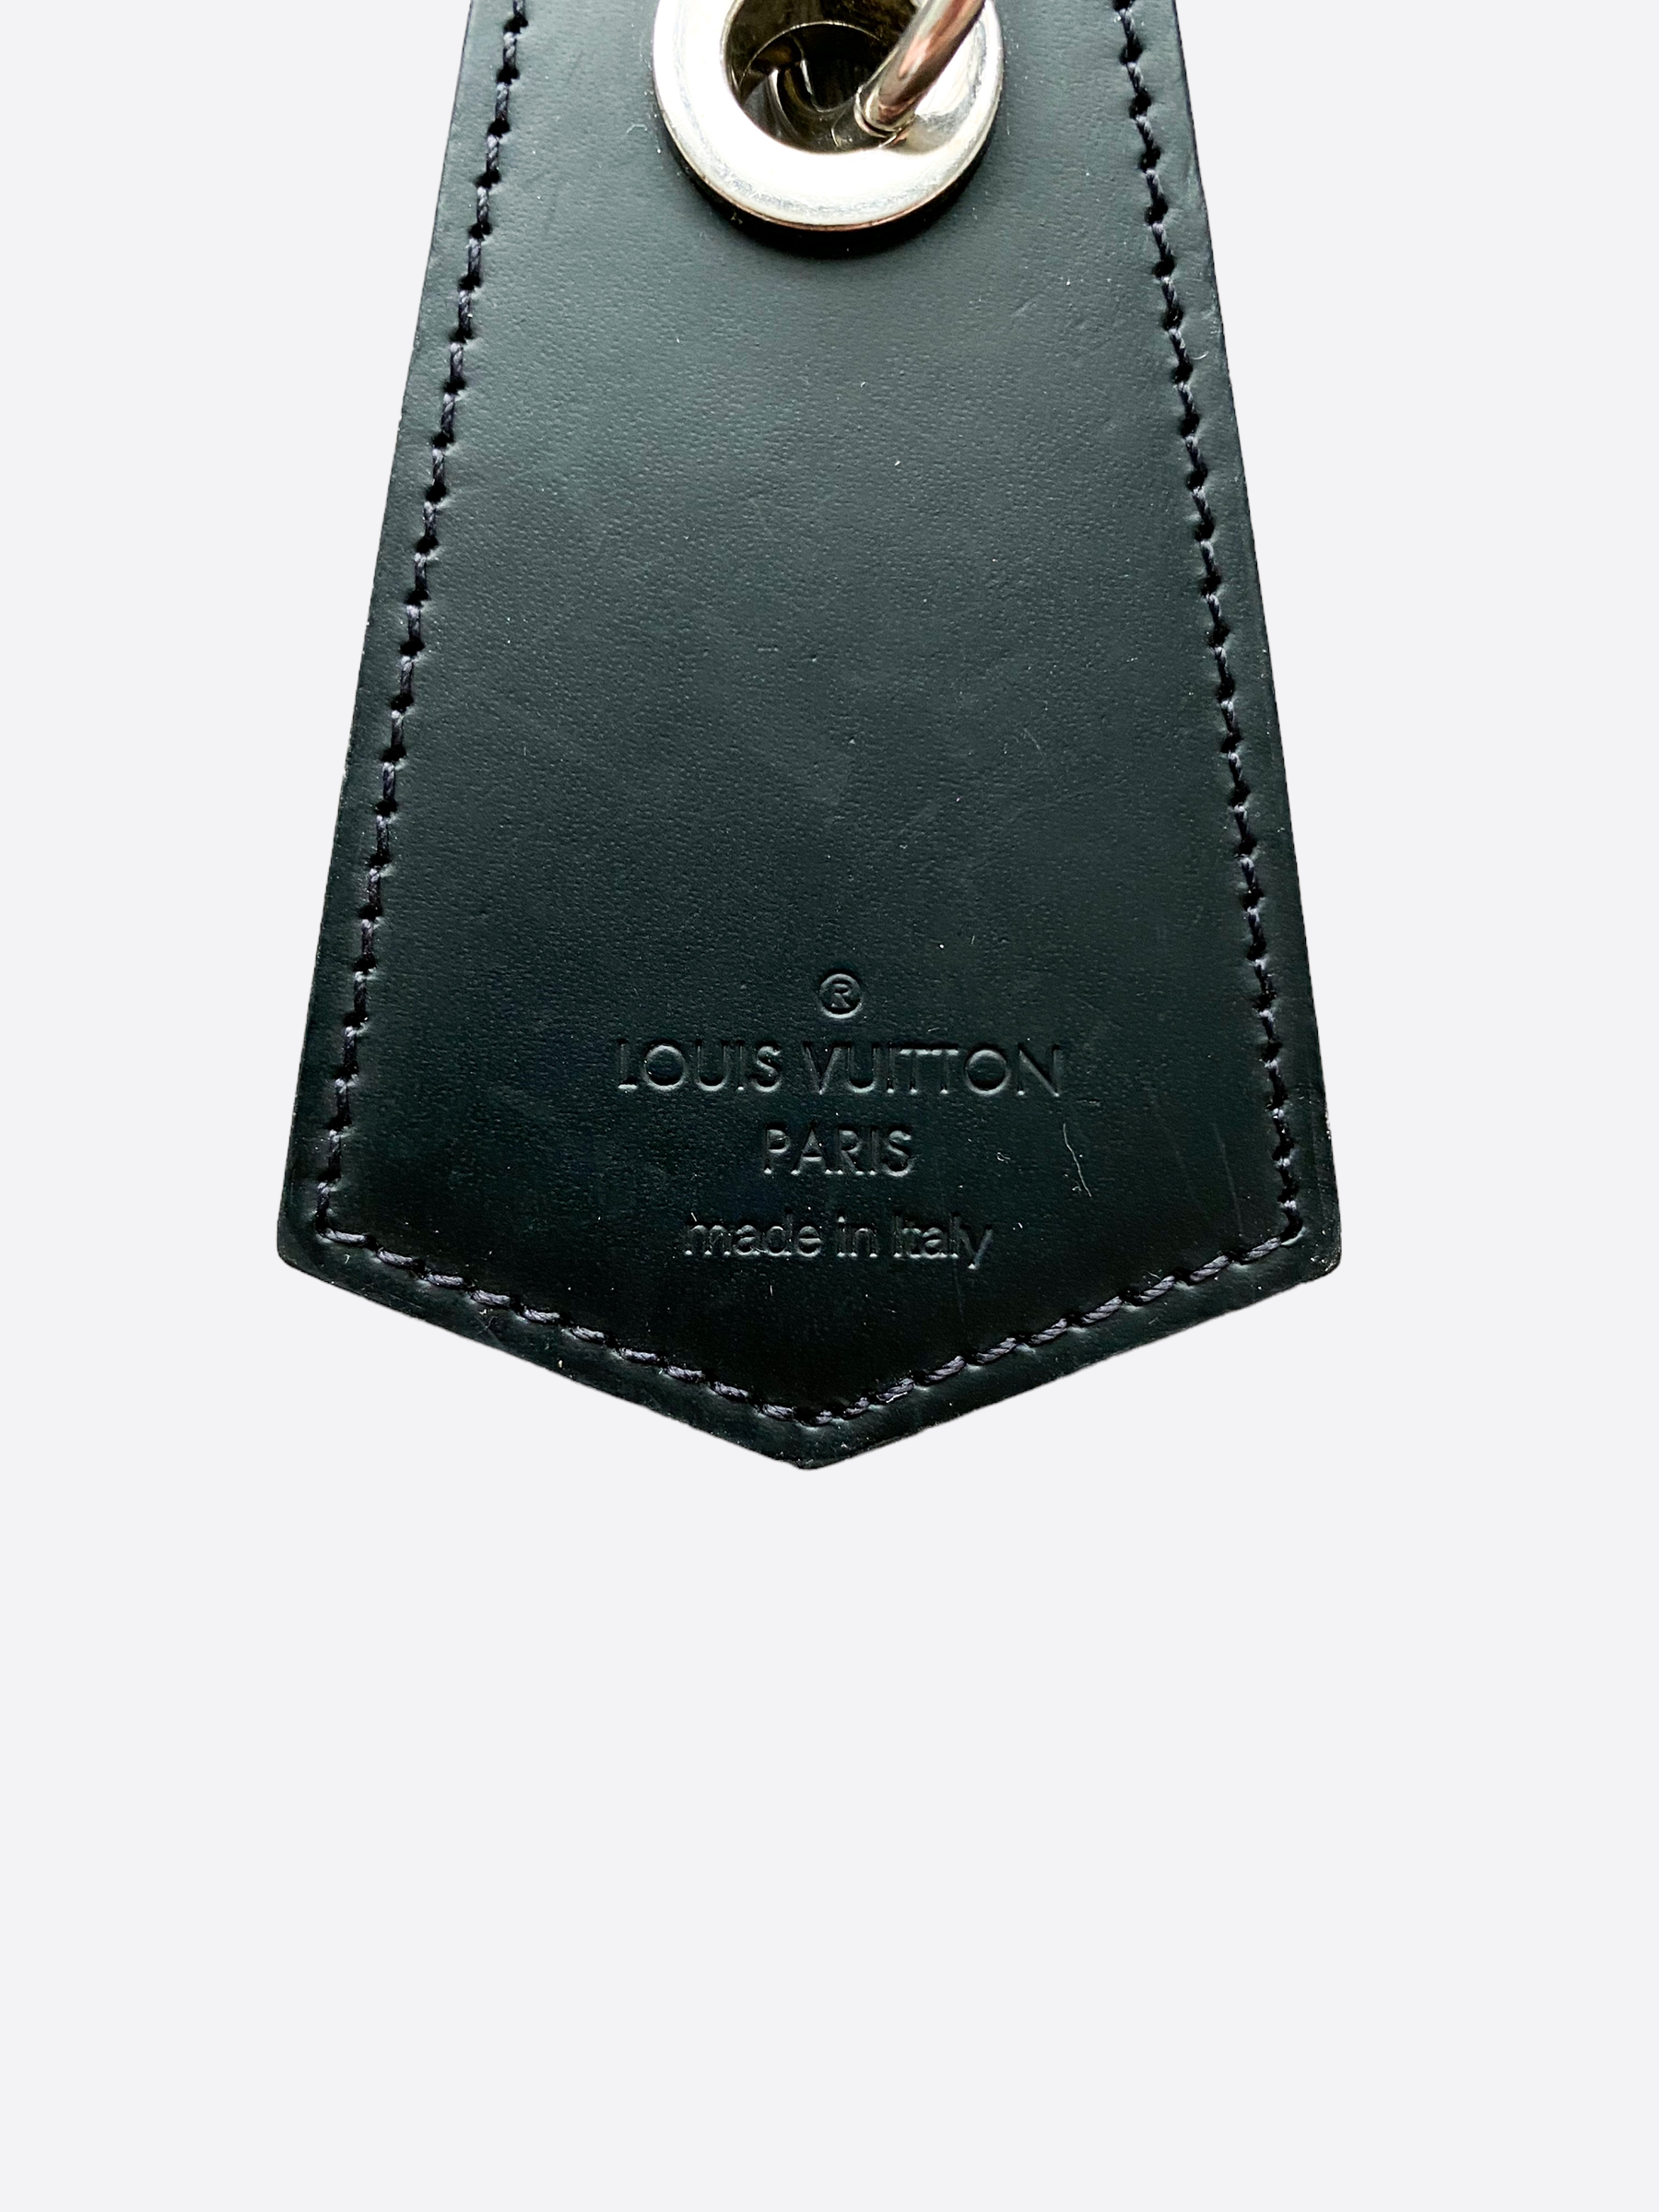 Louis Vuitton Monogram Eclipse Key Holder – Savonches